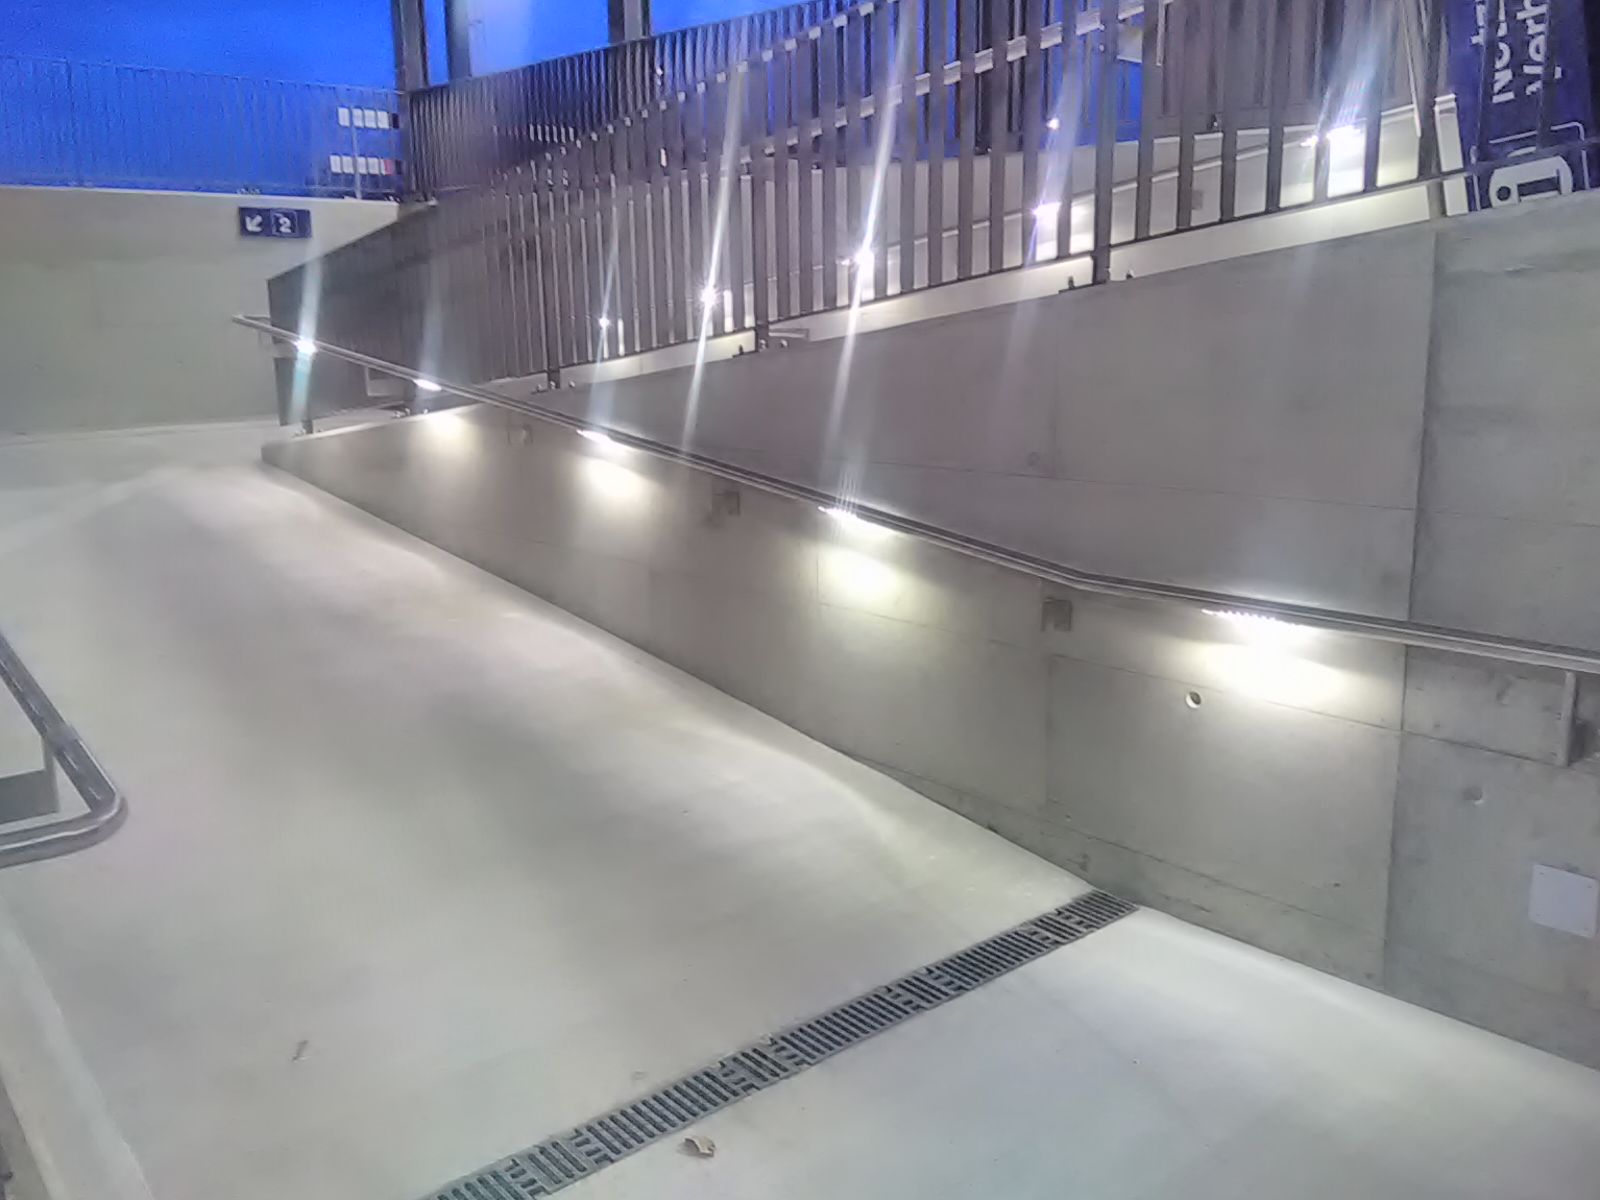 Die SBB setzt zunehmend auf Handläufe mit Licht - hier im Bahnhof Stammheim/ZH